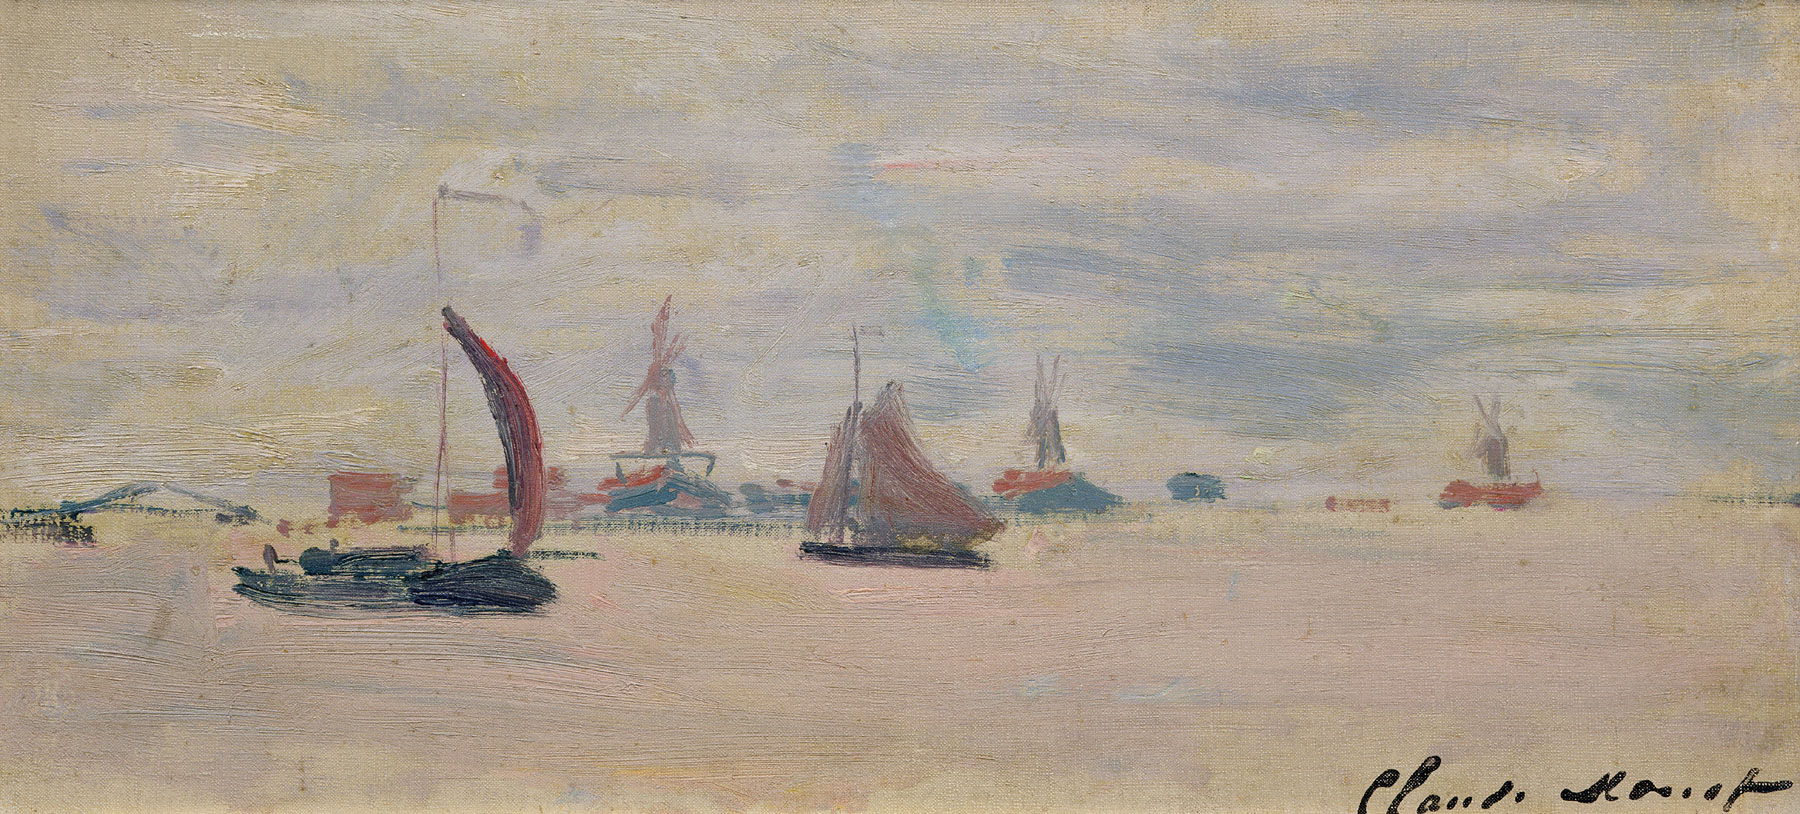 Claude Monet, Veduta della Voorzaan (1871; olio su tela, 18x38 cm; Parigi, Musée Marmottan Monet, lascito Roger Hauser, 1990 Inv. 5239) © Musée Marmottan Monet, Académie des beaux-arts, Paris
